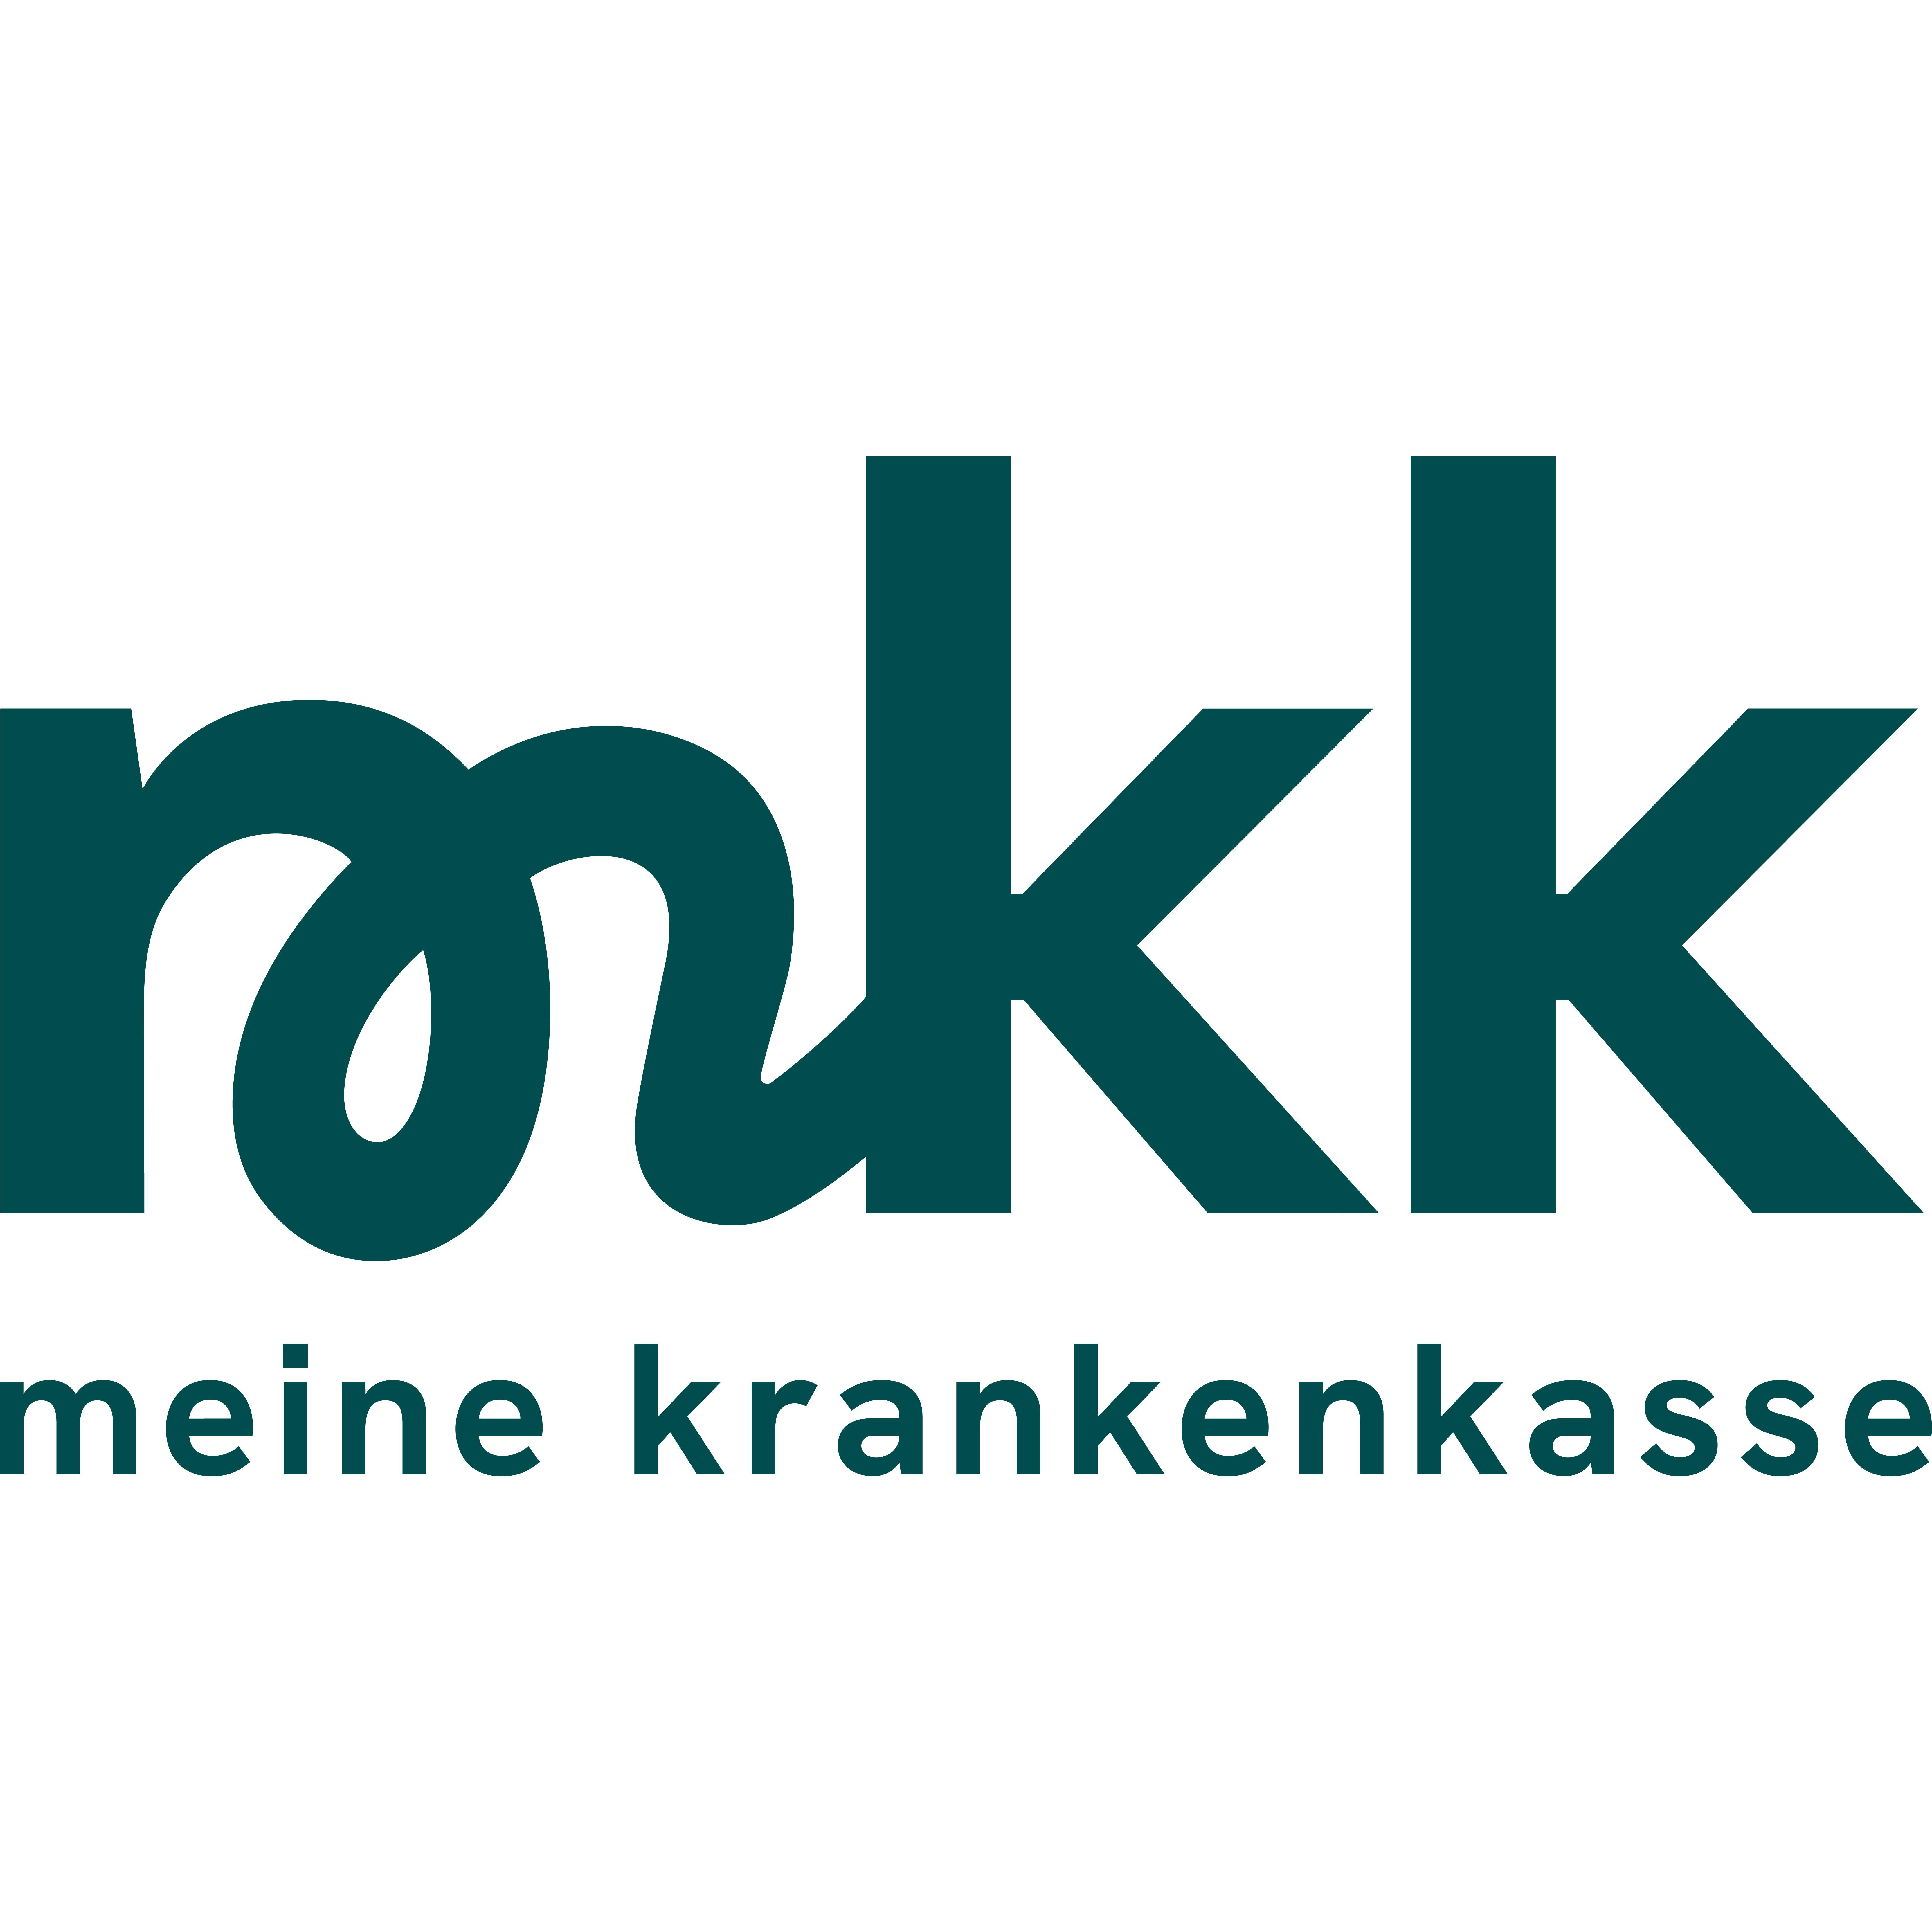 mkk - meine krankenkasse in Berlin - Logo